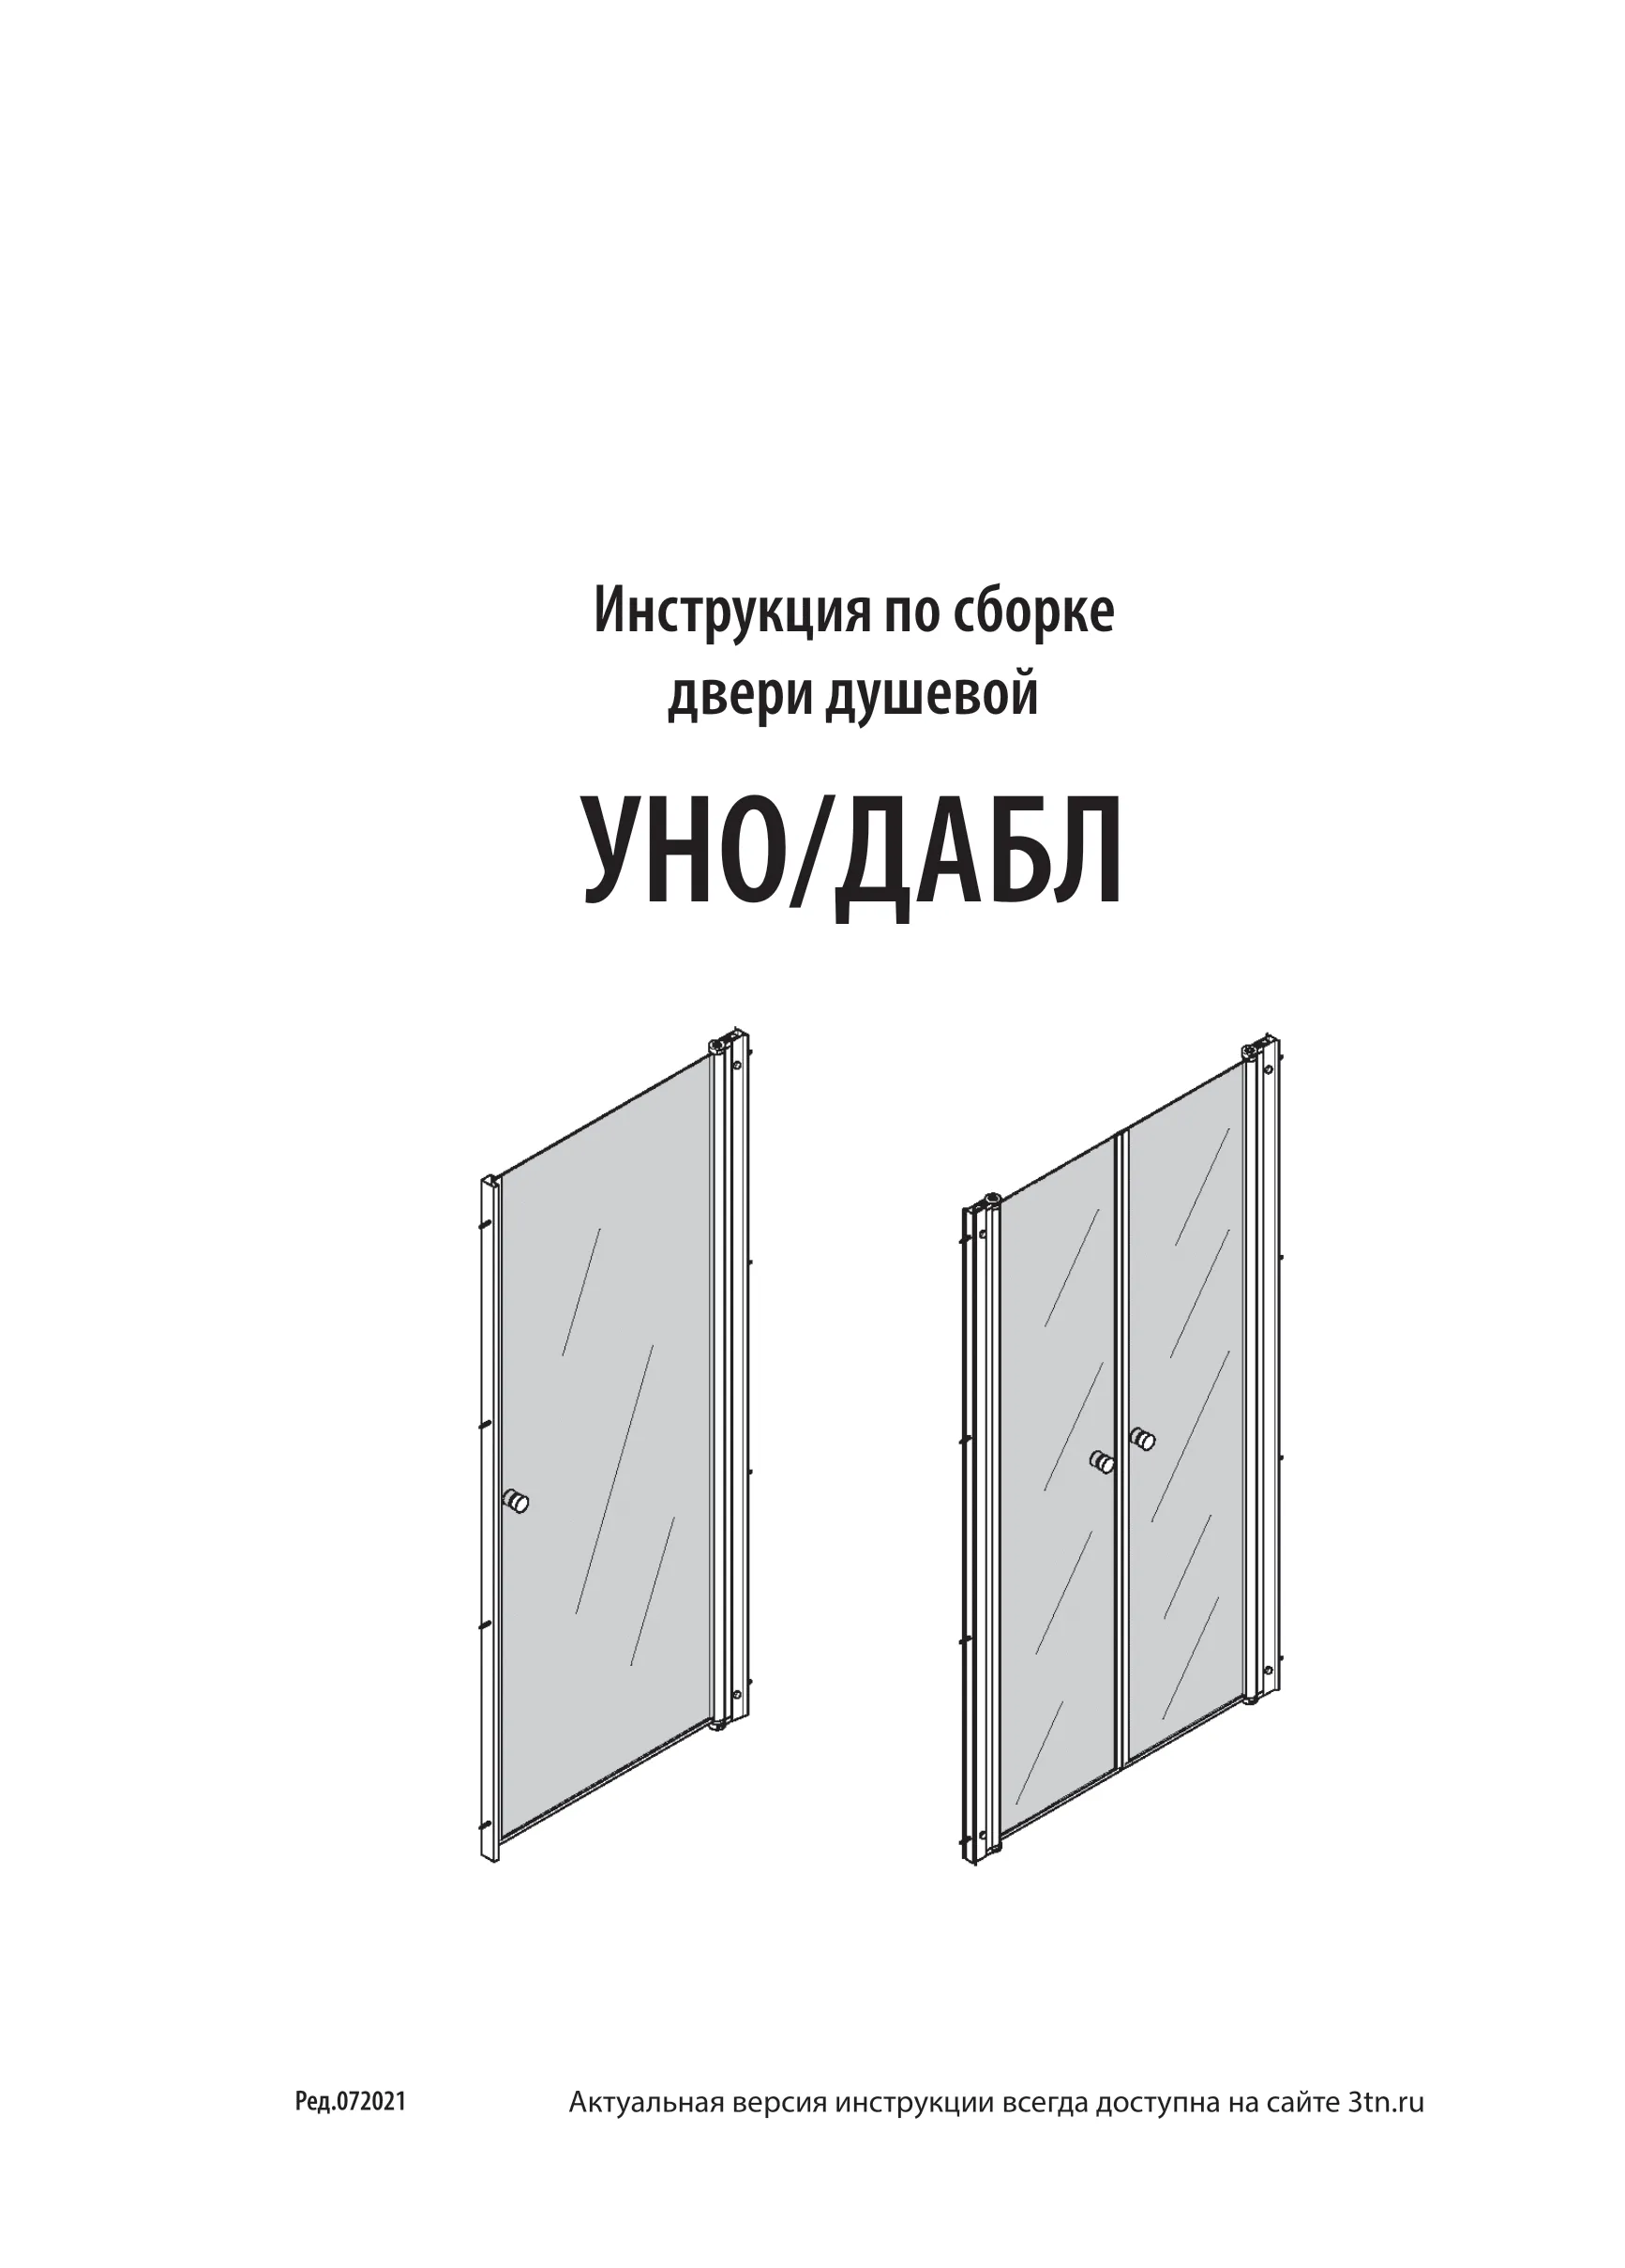 Инструкция по сборке двери душевой УНО/ДАБЛ, ред. 07.2021